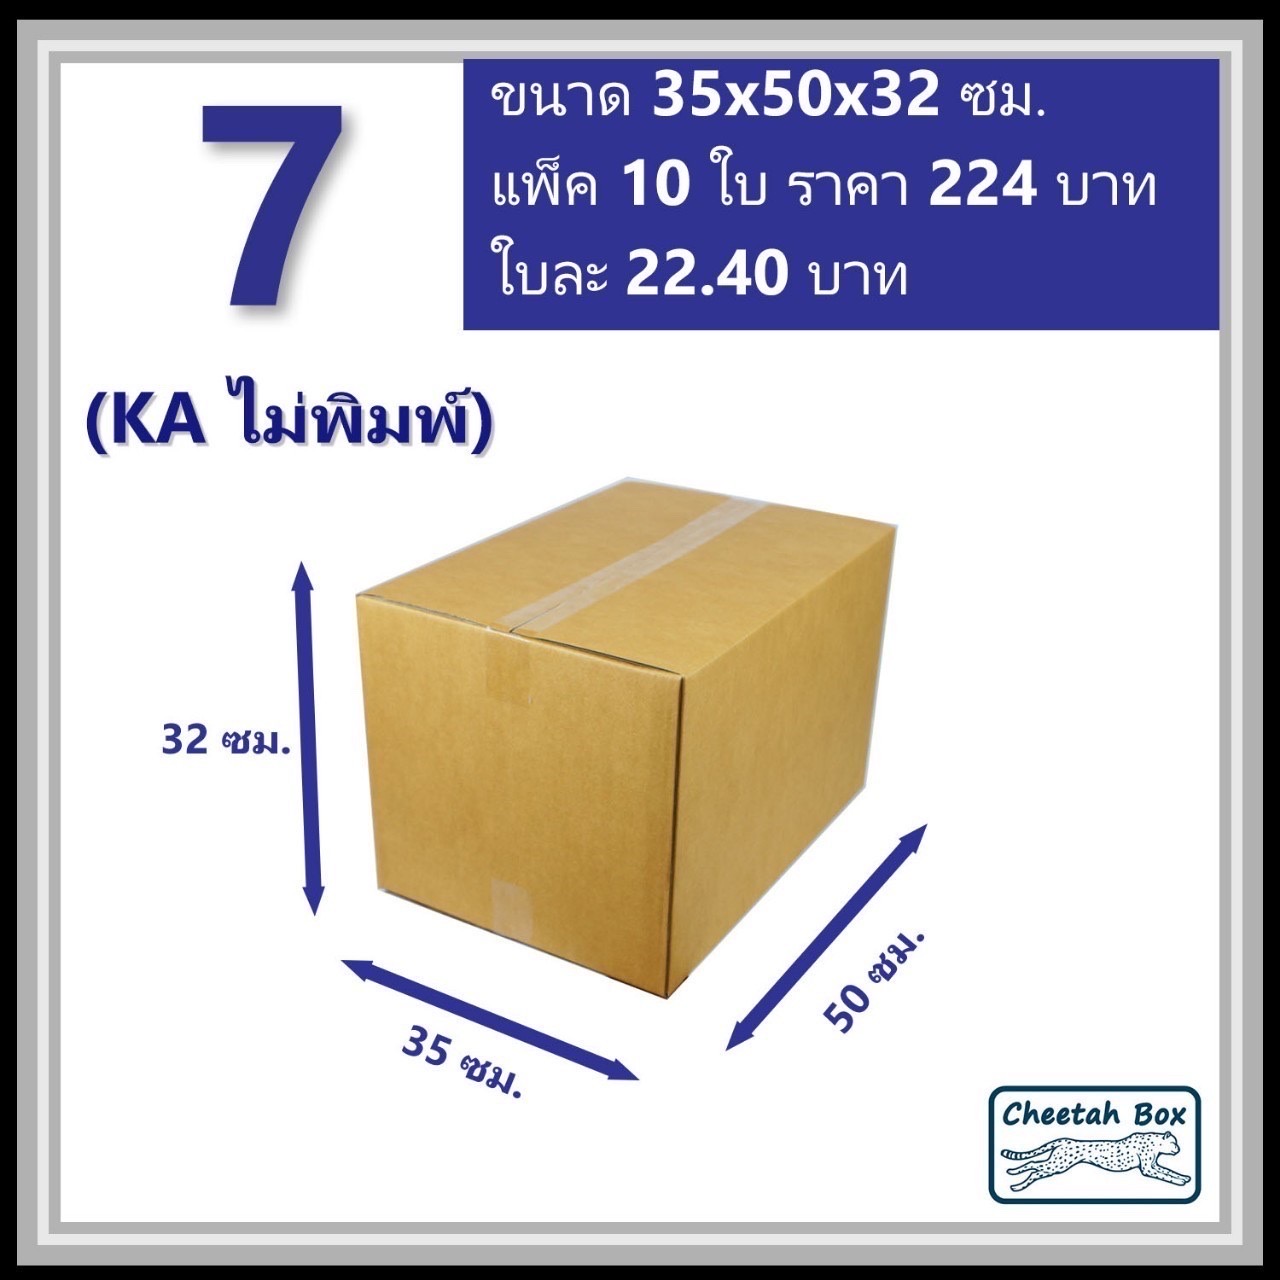 กล่องพัสดุ 7 (KA) ไม่พิมพ์ (Post Box) ลูกฟูก 3 ชั้น ขนาด 35W x 50L x 32H cm.